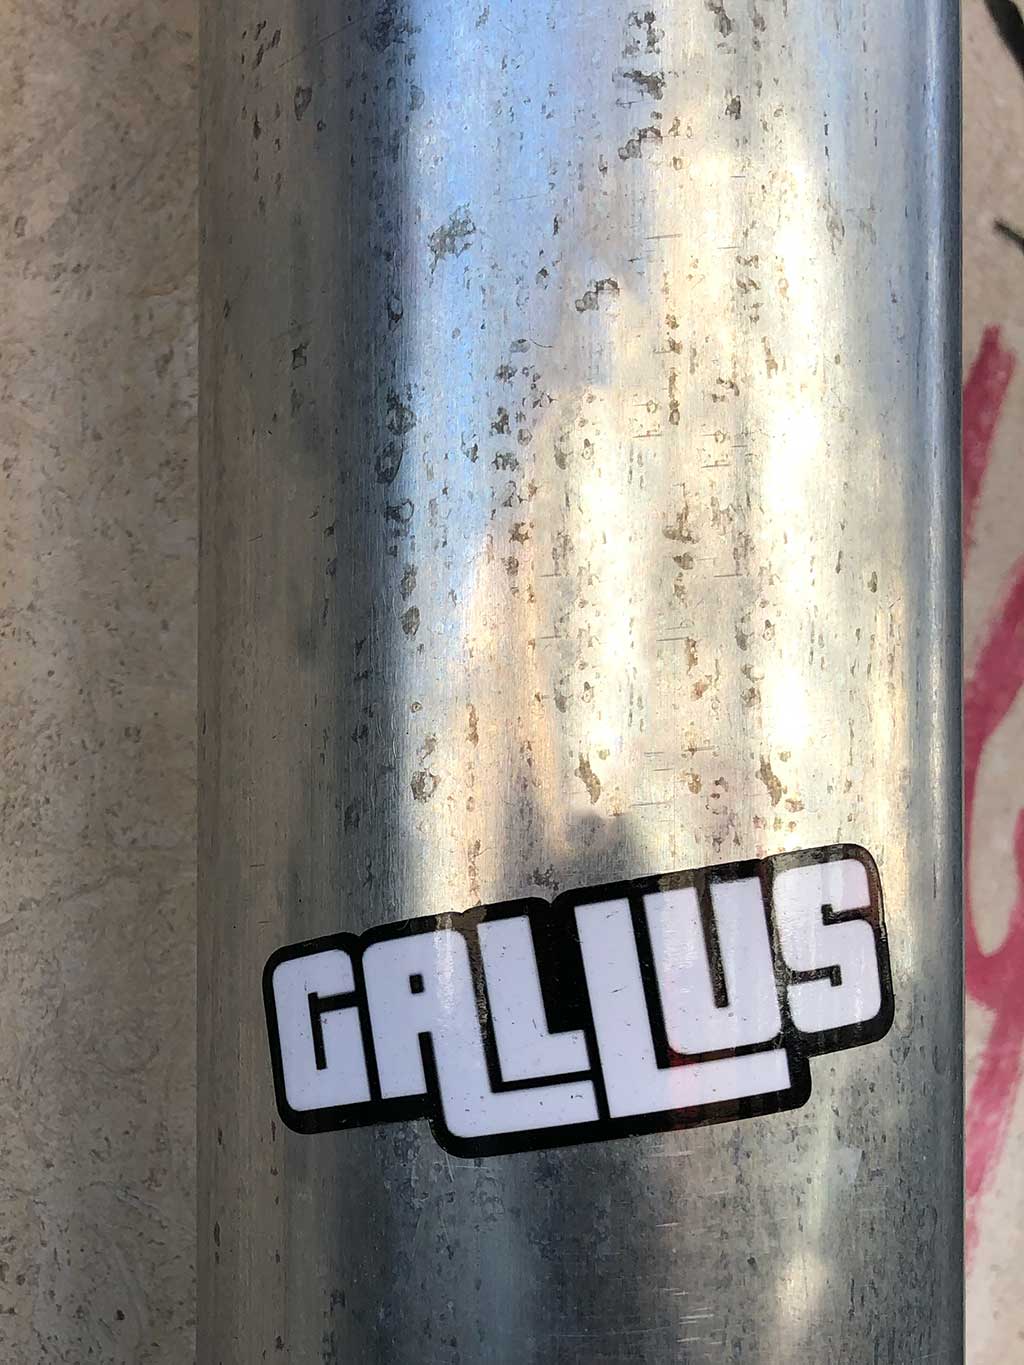 Urban Art Frankfurt - Gallus